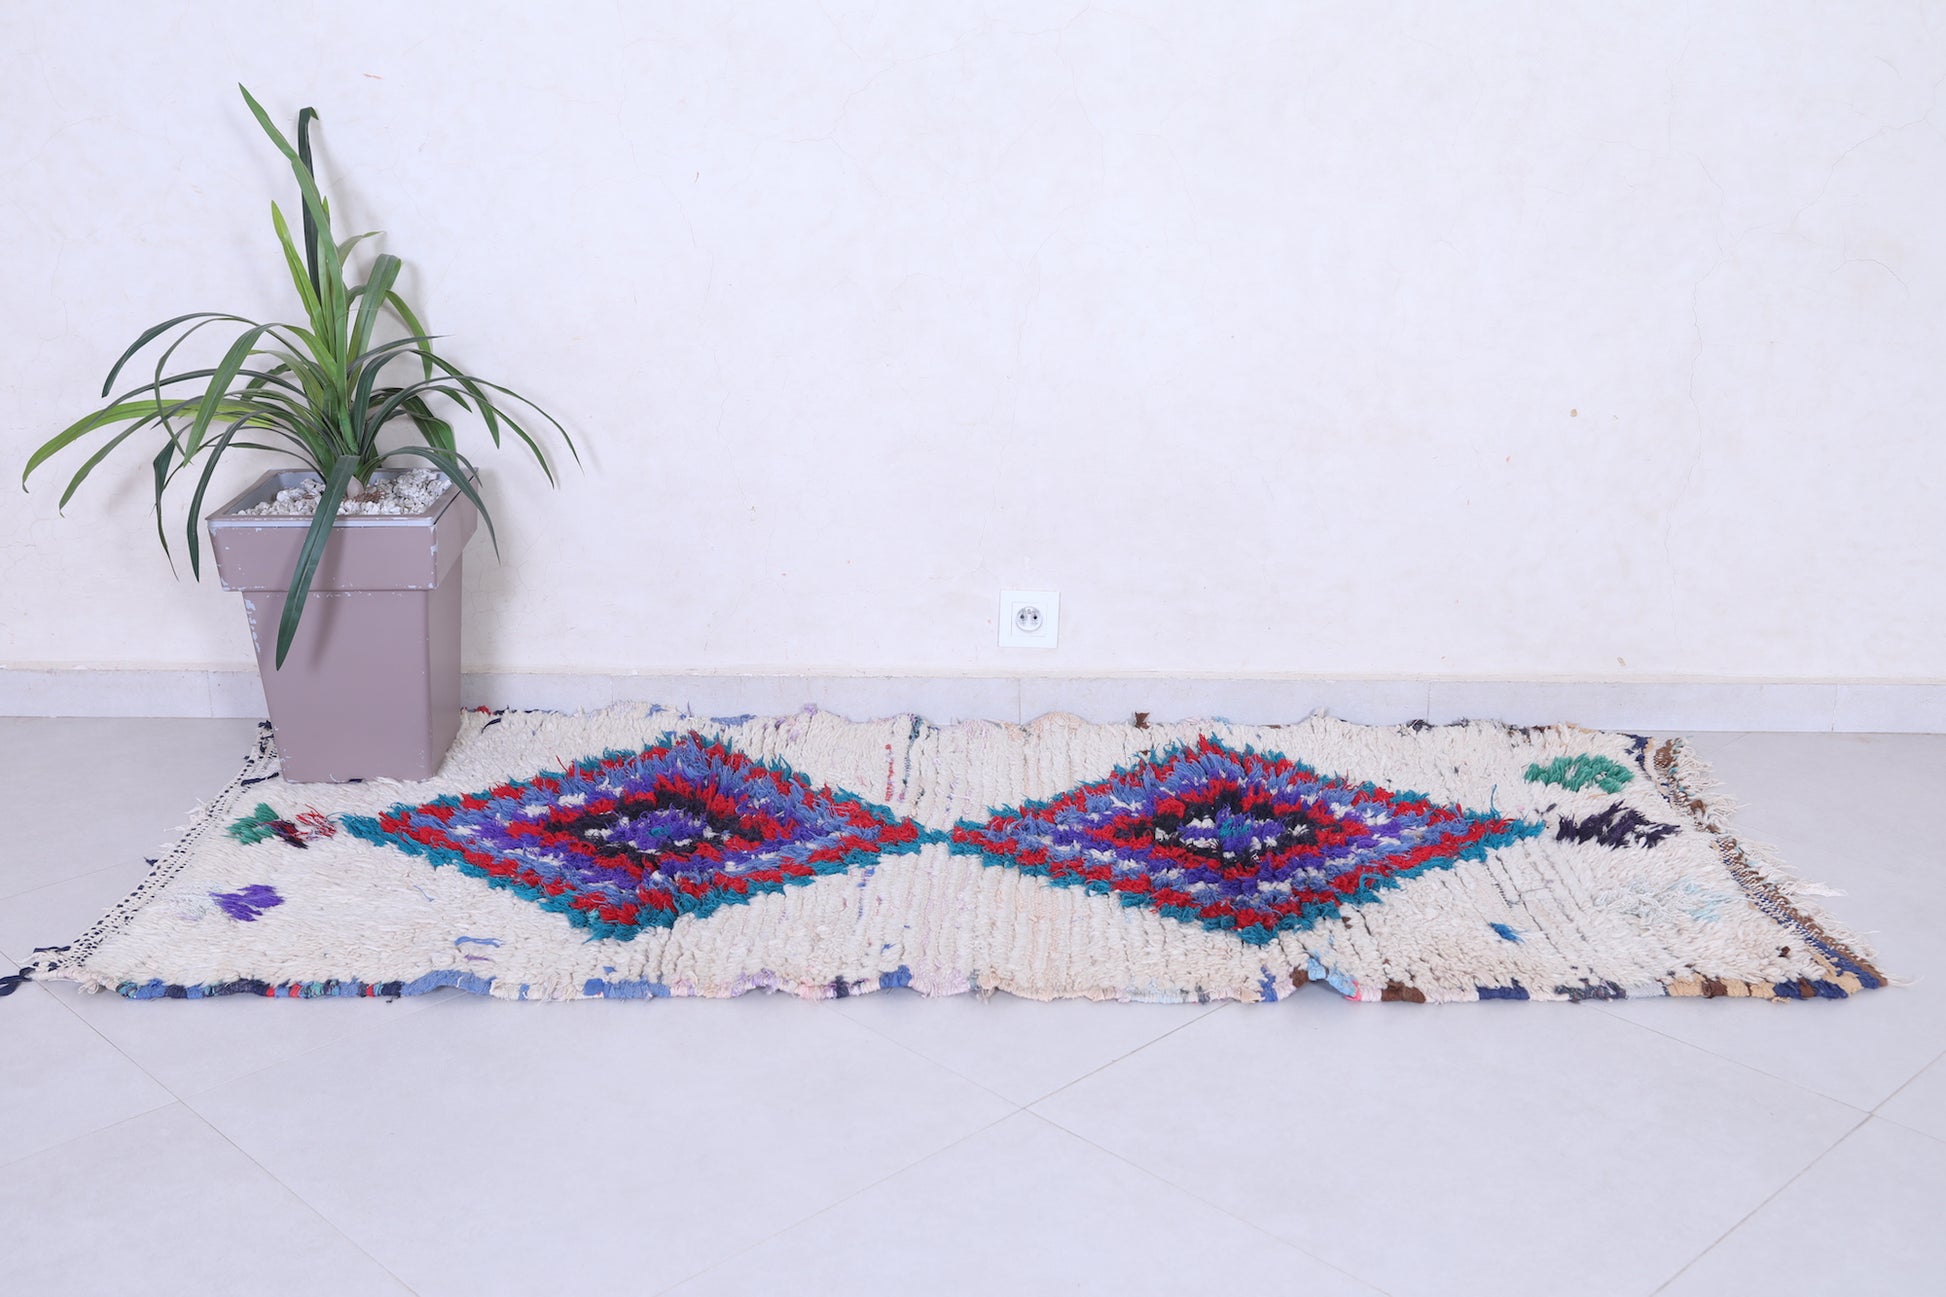 Vintage handmade moroccan berber runner rug 2.7 FT X 6.5 FT